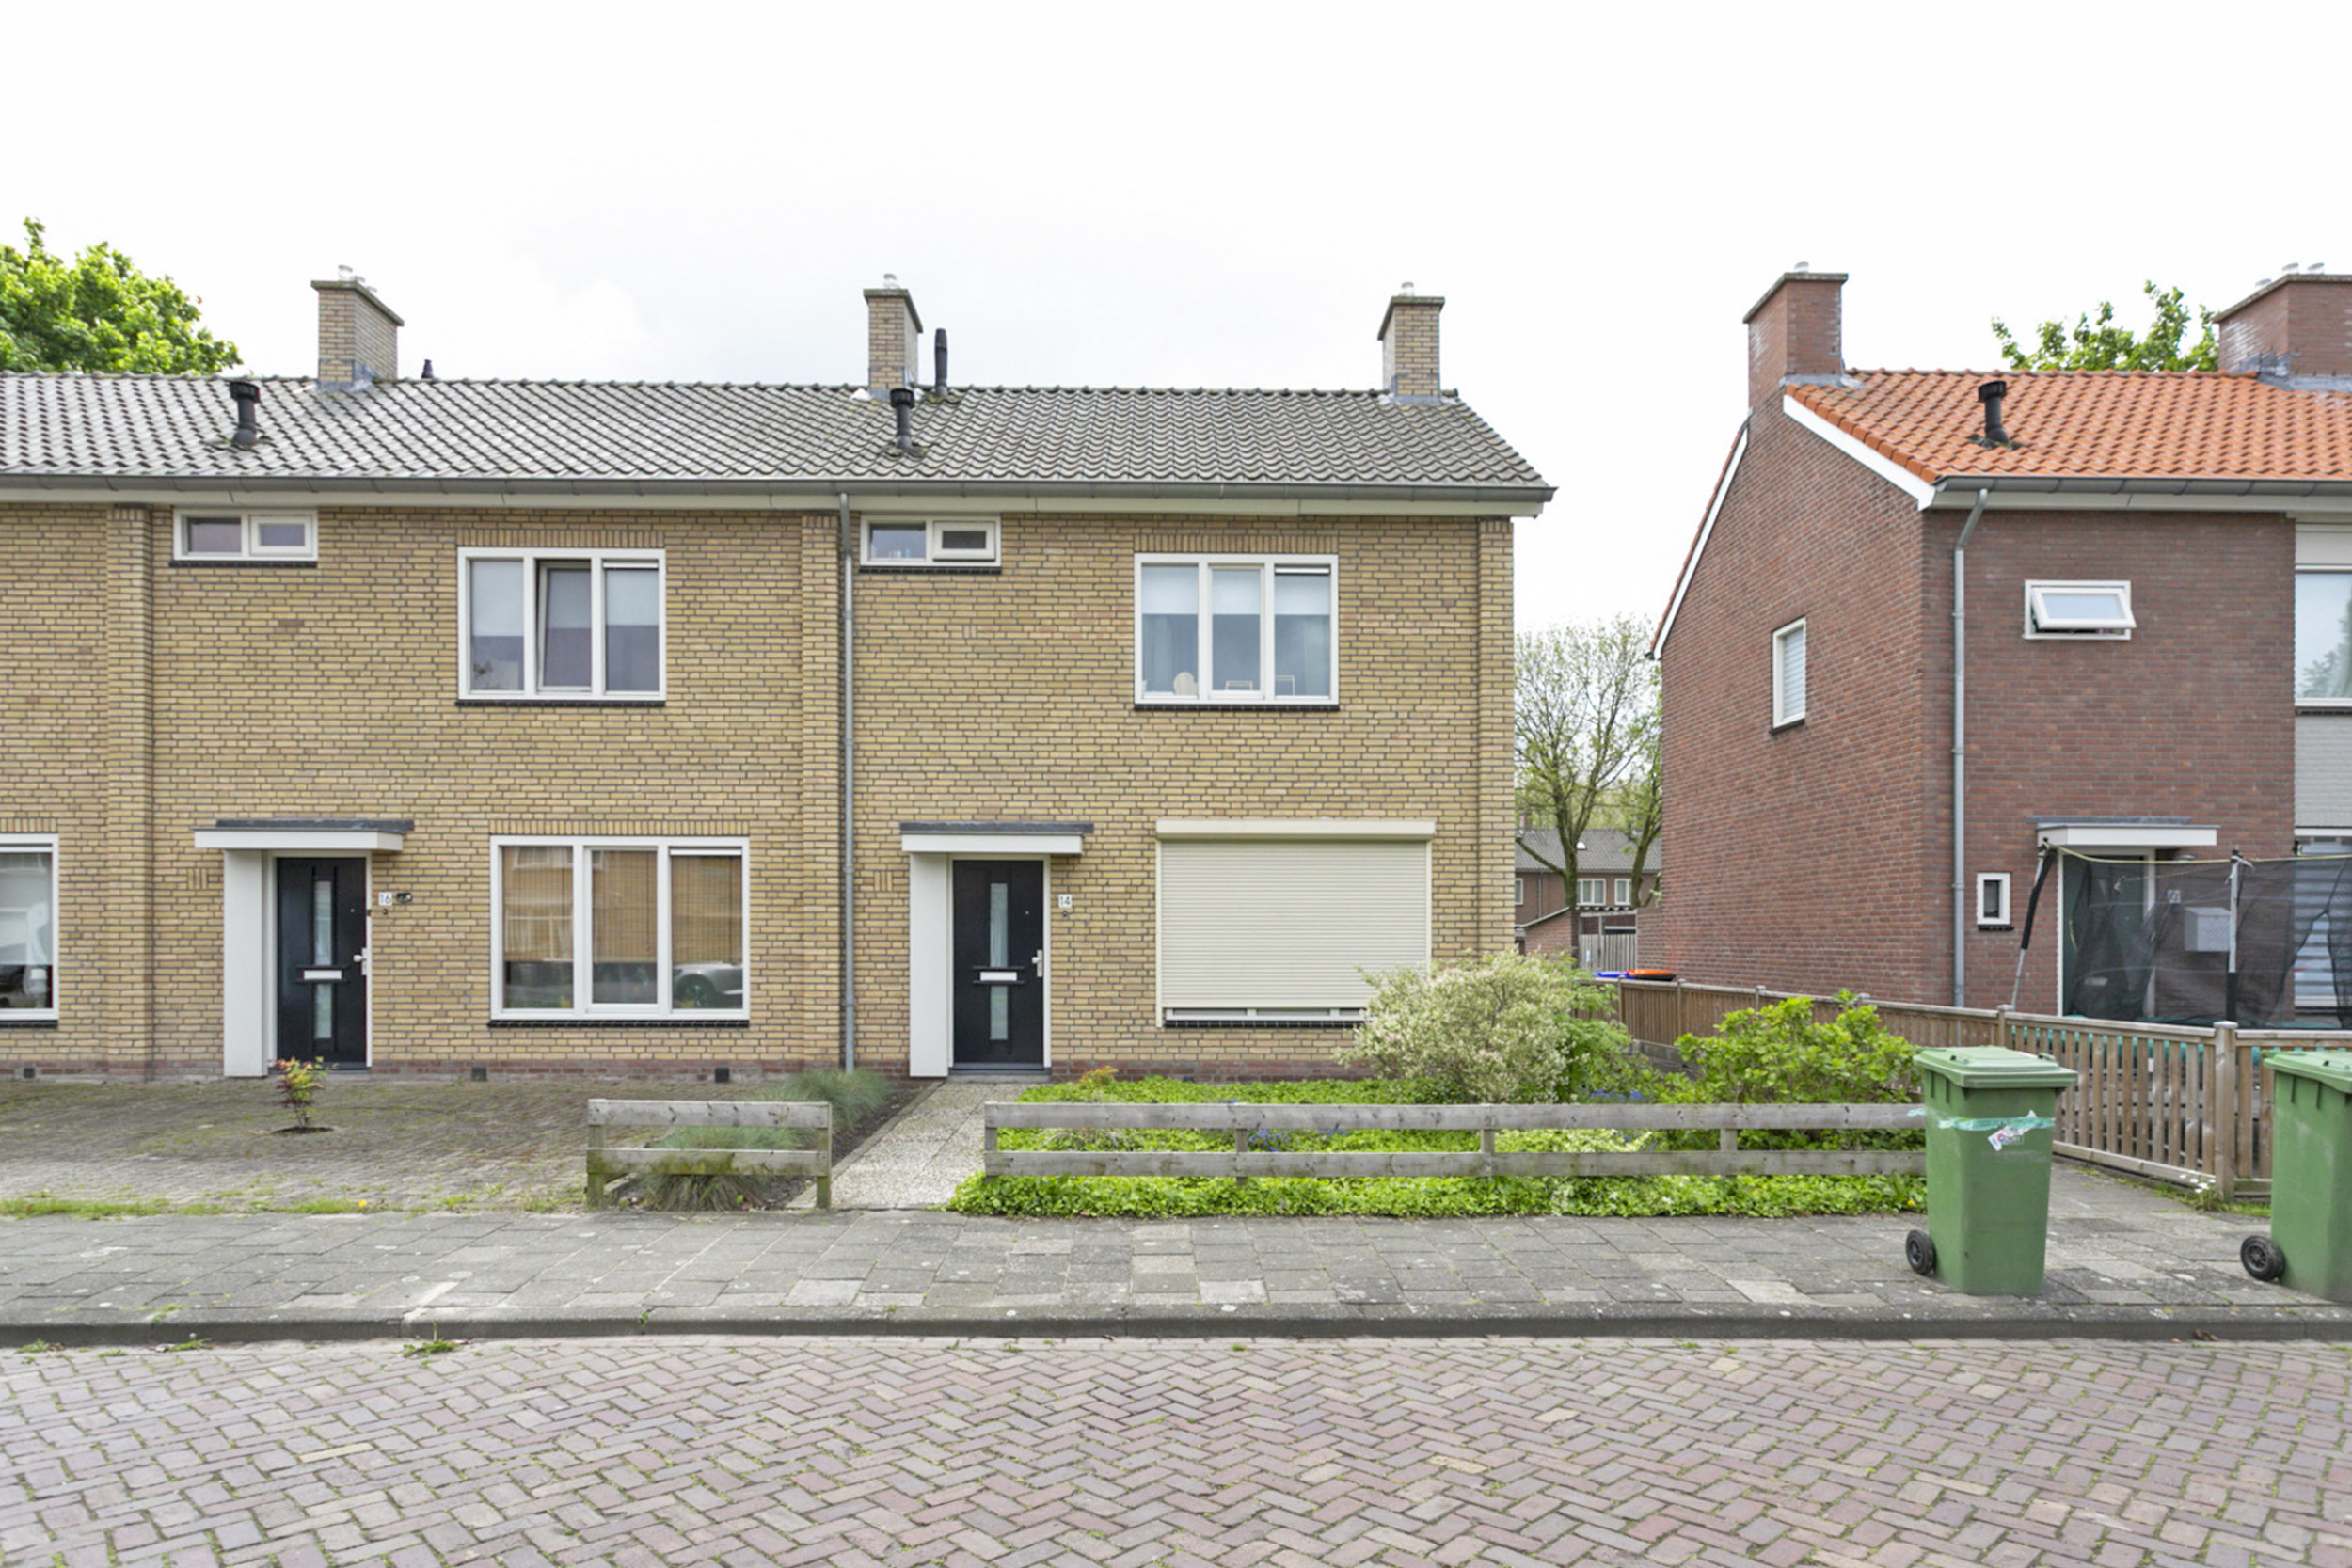 Groenstraat 14, 4941 HB Raamsdonksveer, Nederland